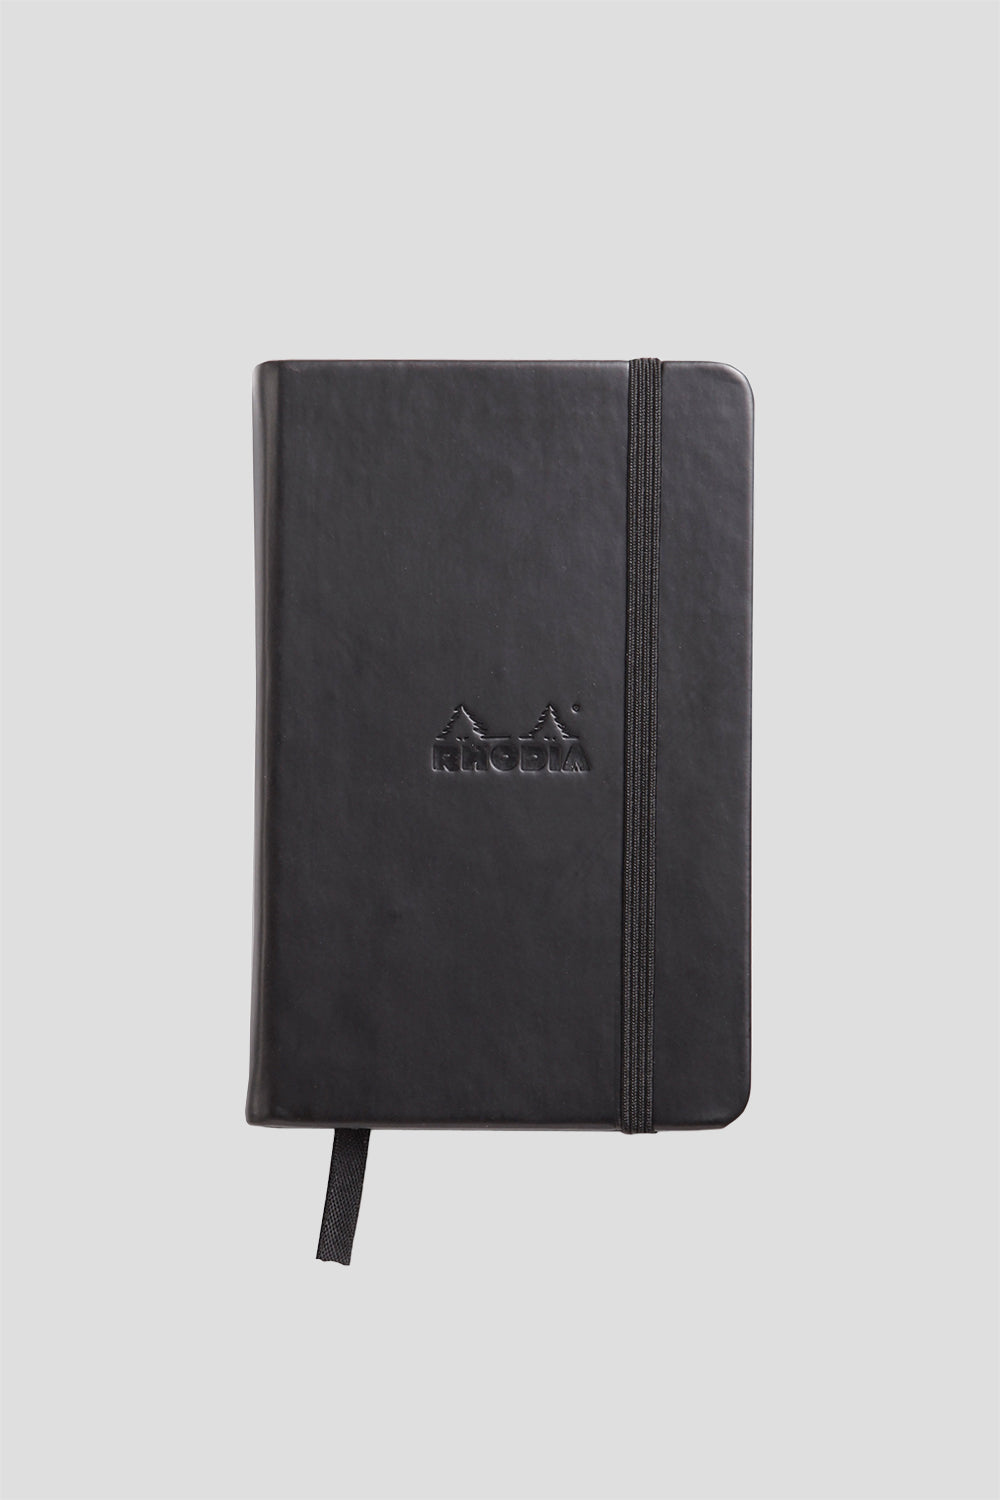 Black Hard Bound Notebook